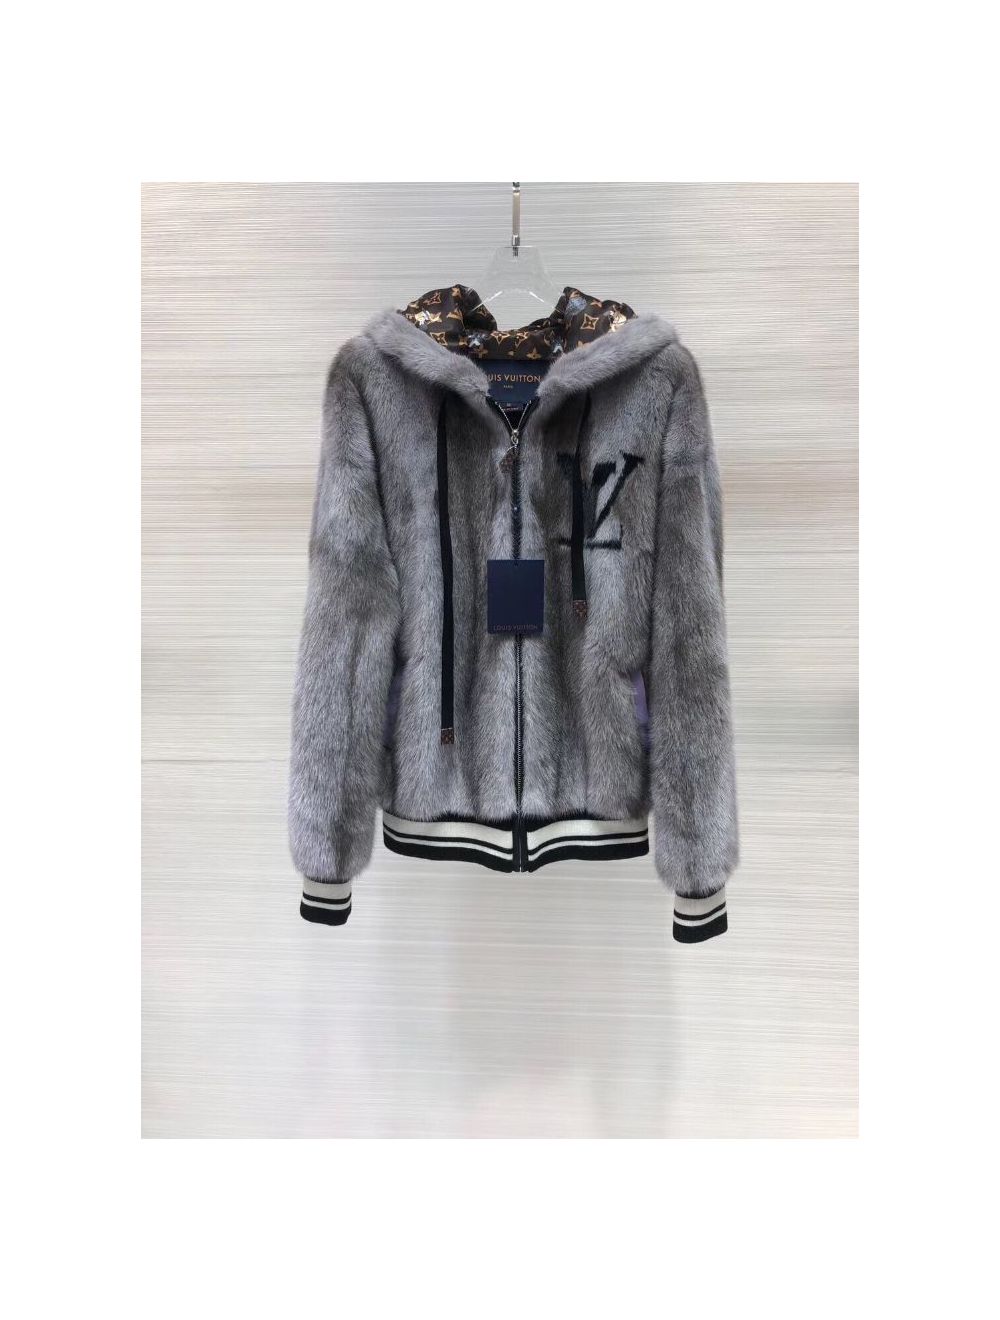 Mink jacket Louis Vuitton Navy size M International in Mink - 37576559